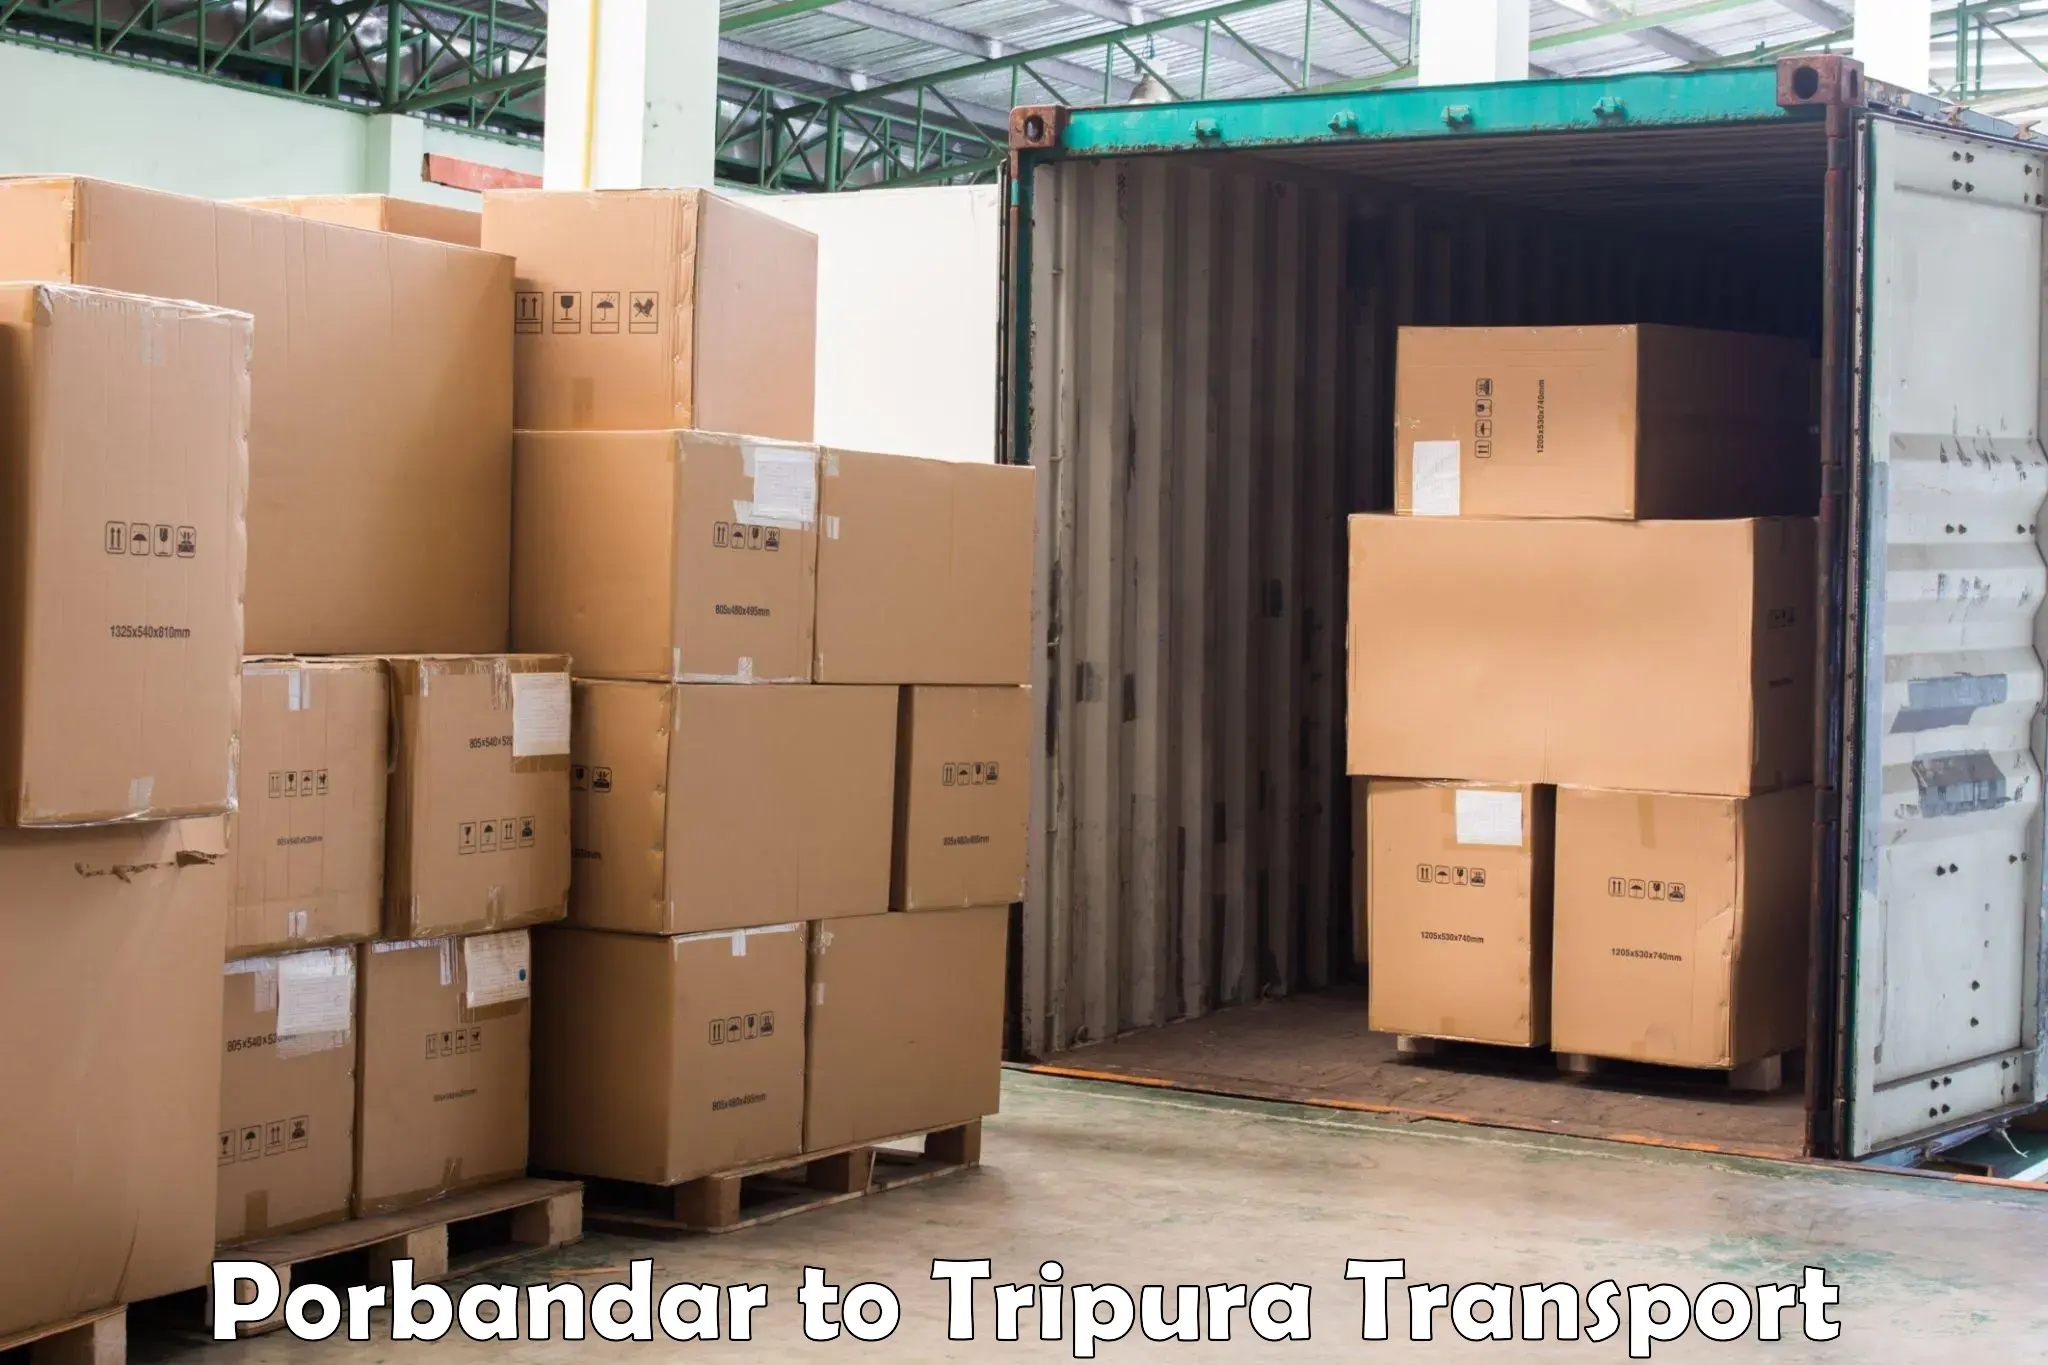 Transport in sharing Porbandar to IIIT Agartala